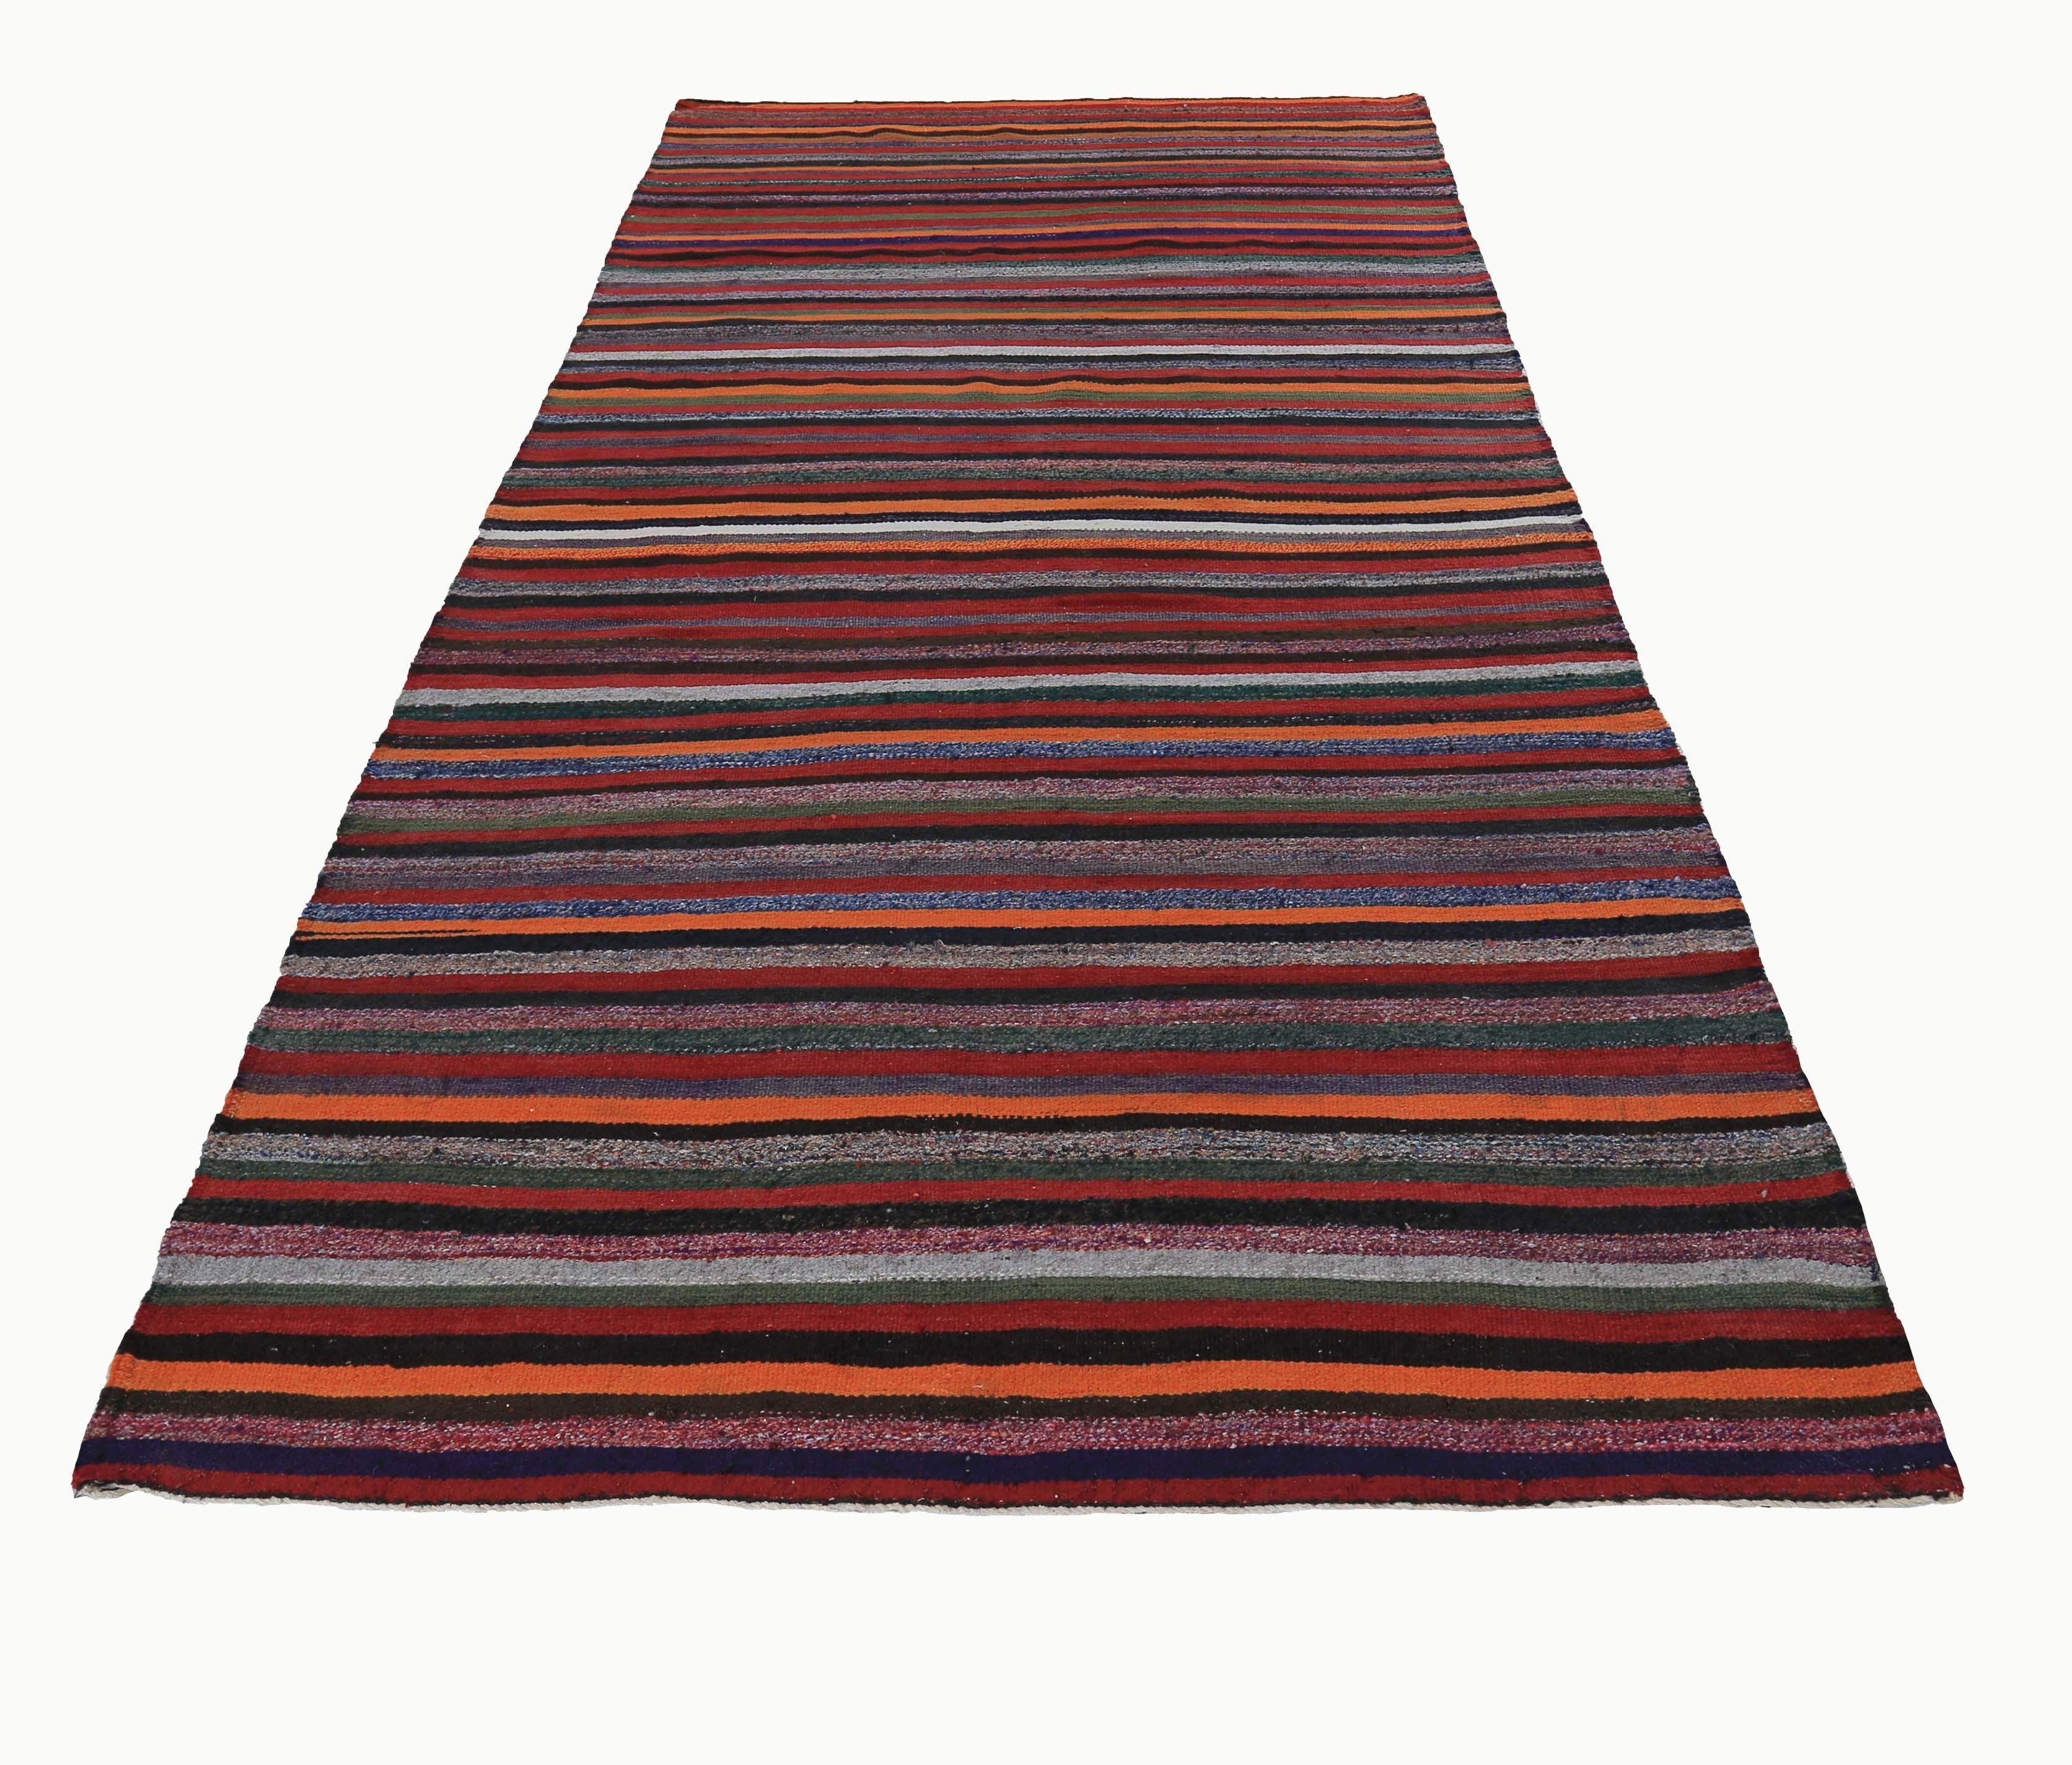 Türkischer Teppich, handgewebt aus feinster Schafwolle und gefärbt mit natürlichen pflanzlichen Farbstoffen, die für Menschen und Haustiere sicher sind. Es handelt sich um ein traditionelles Kelim-Flachgewebemuster mit Stammesstreifen in